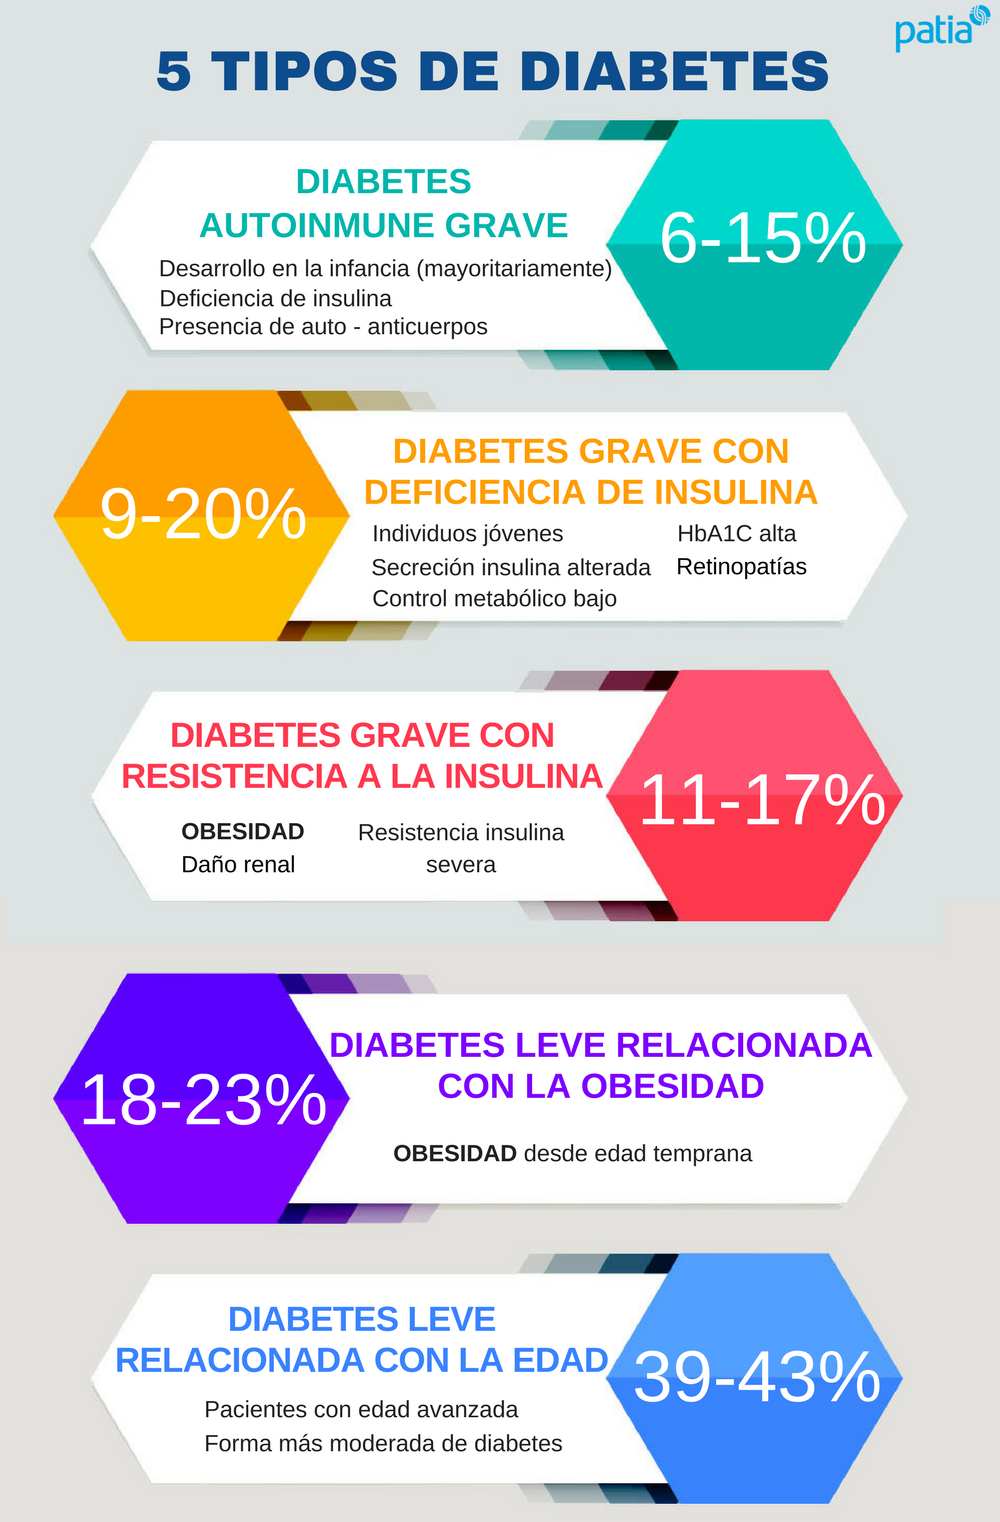 nueva clasificación diabetes 5 tipos